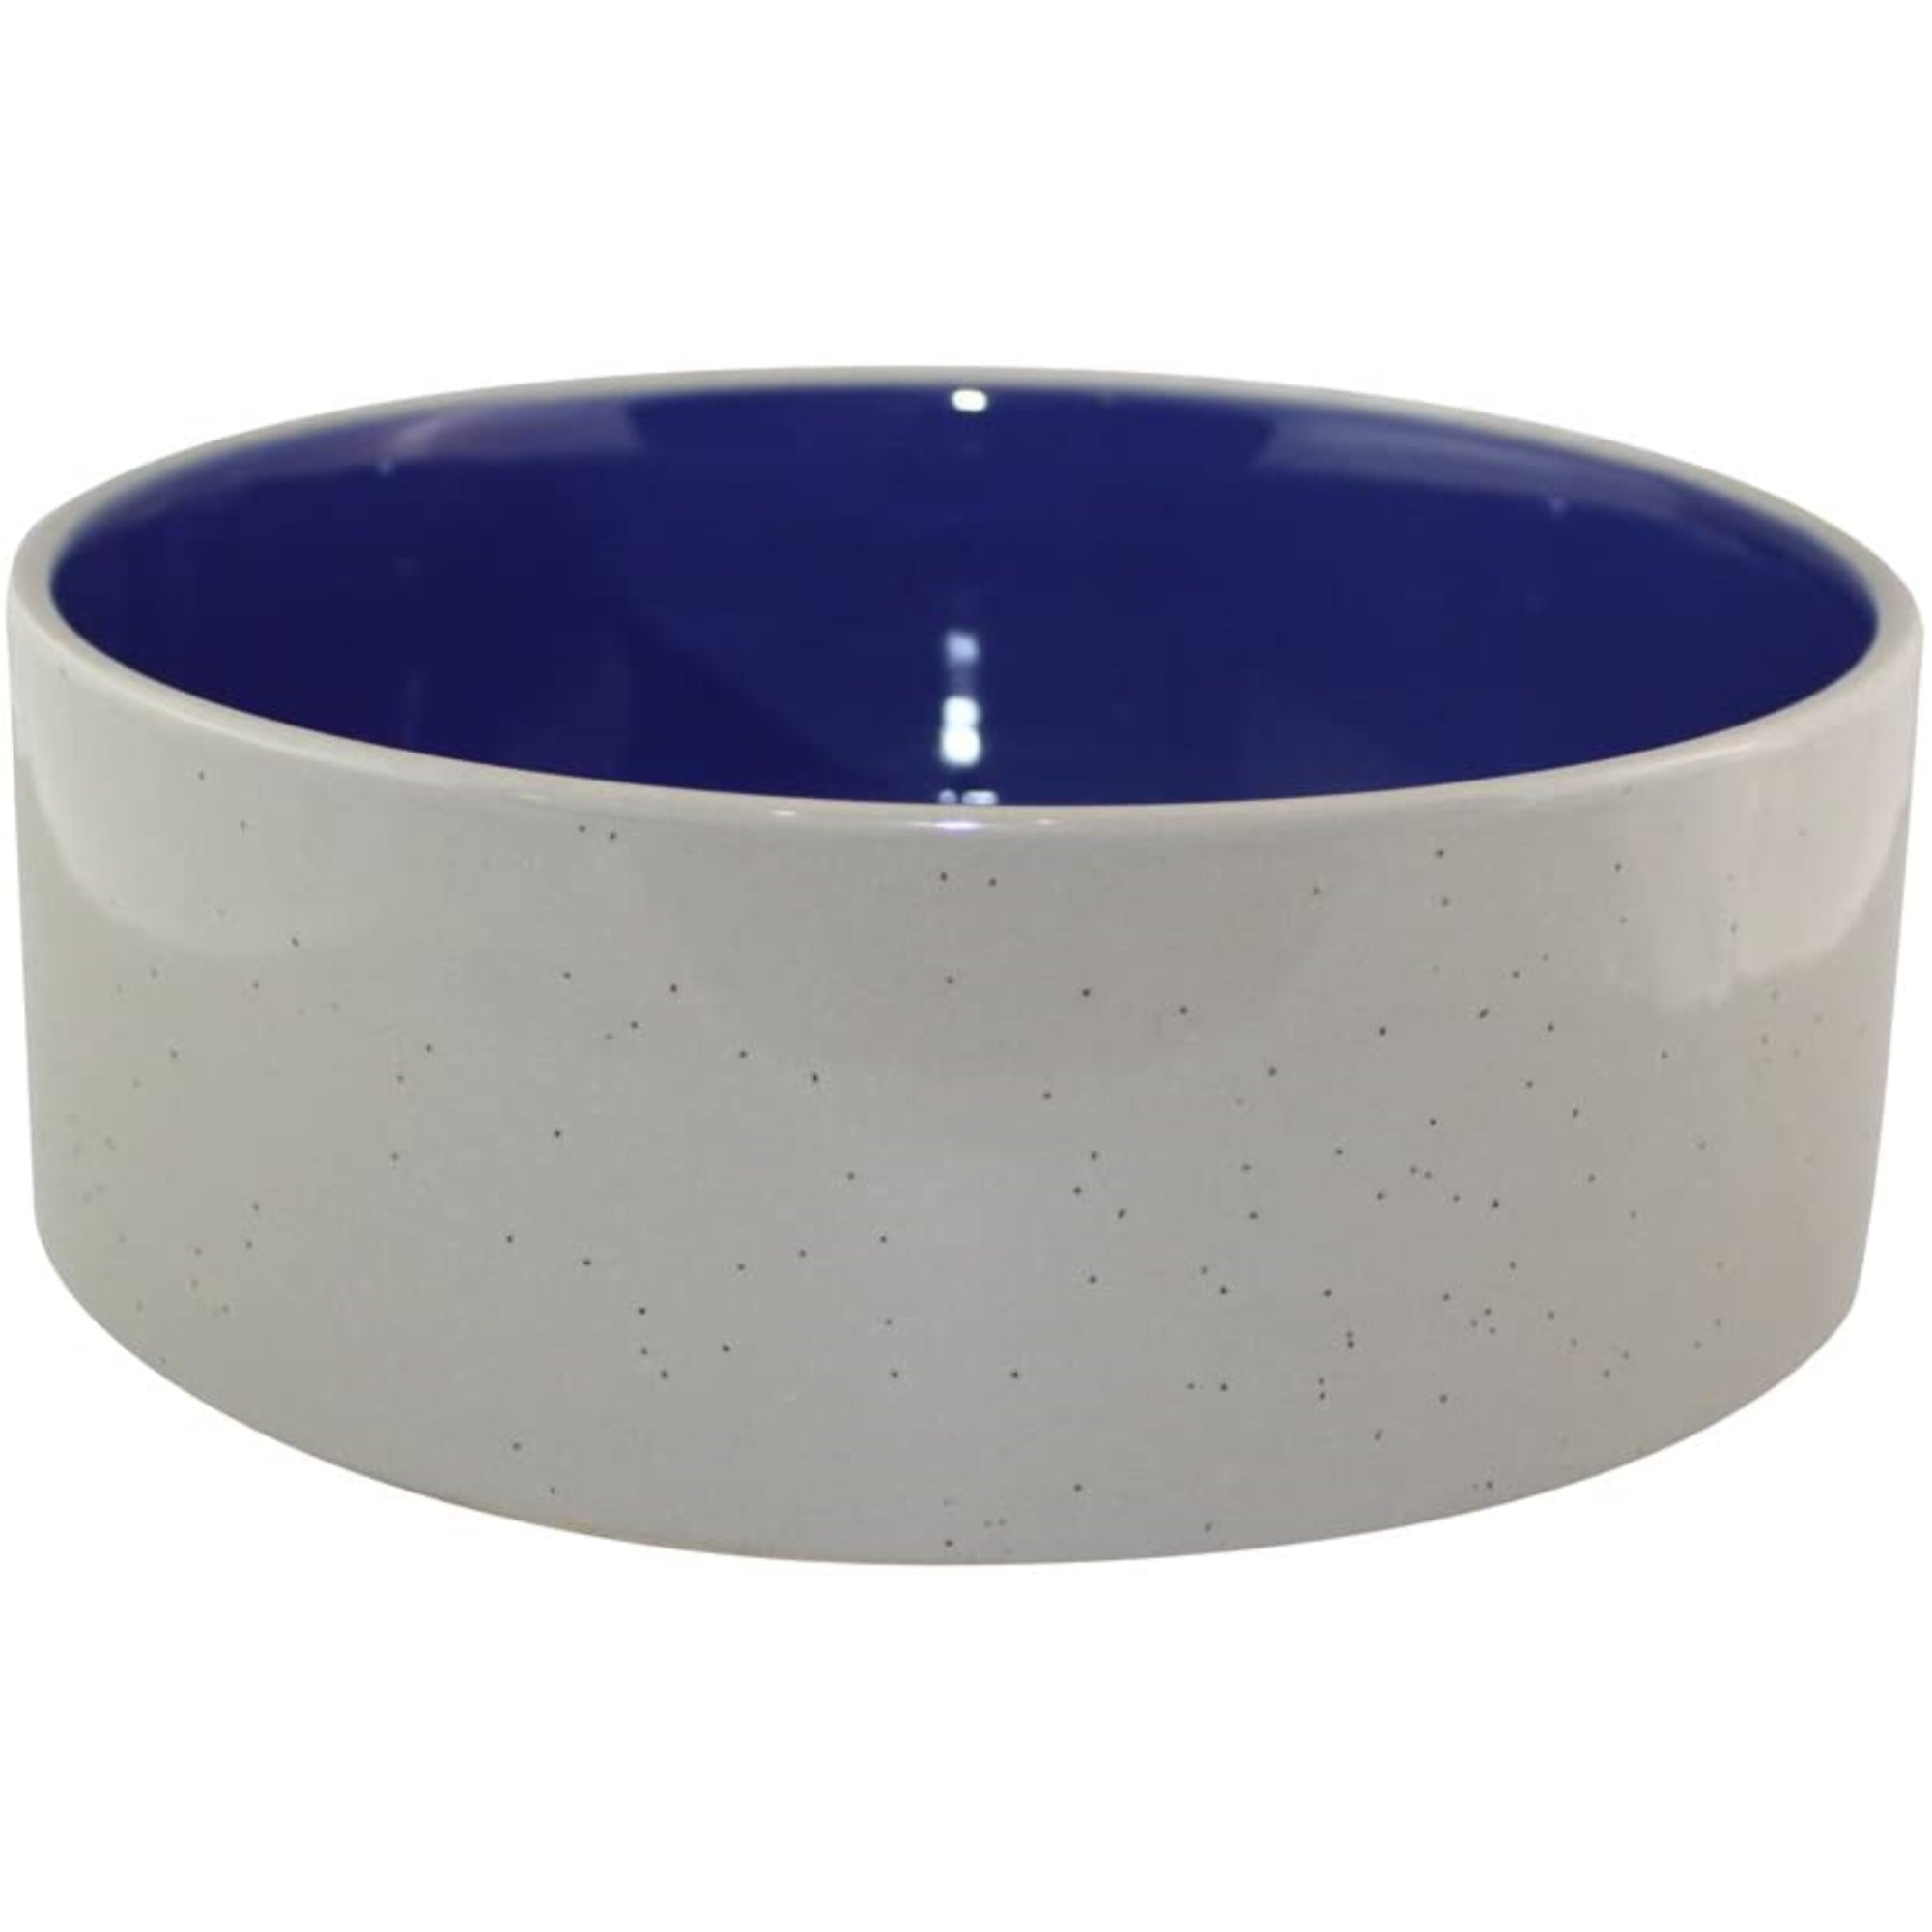 Ethical Stoneware Dog Dish, Blue & Tan, 7.5"